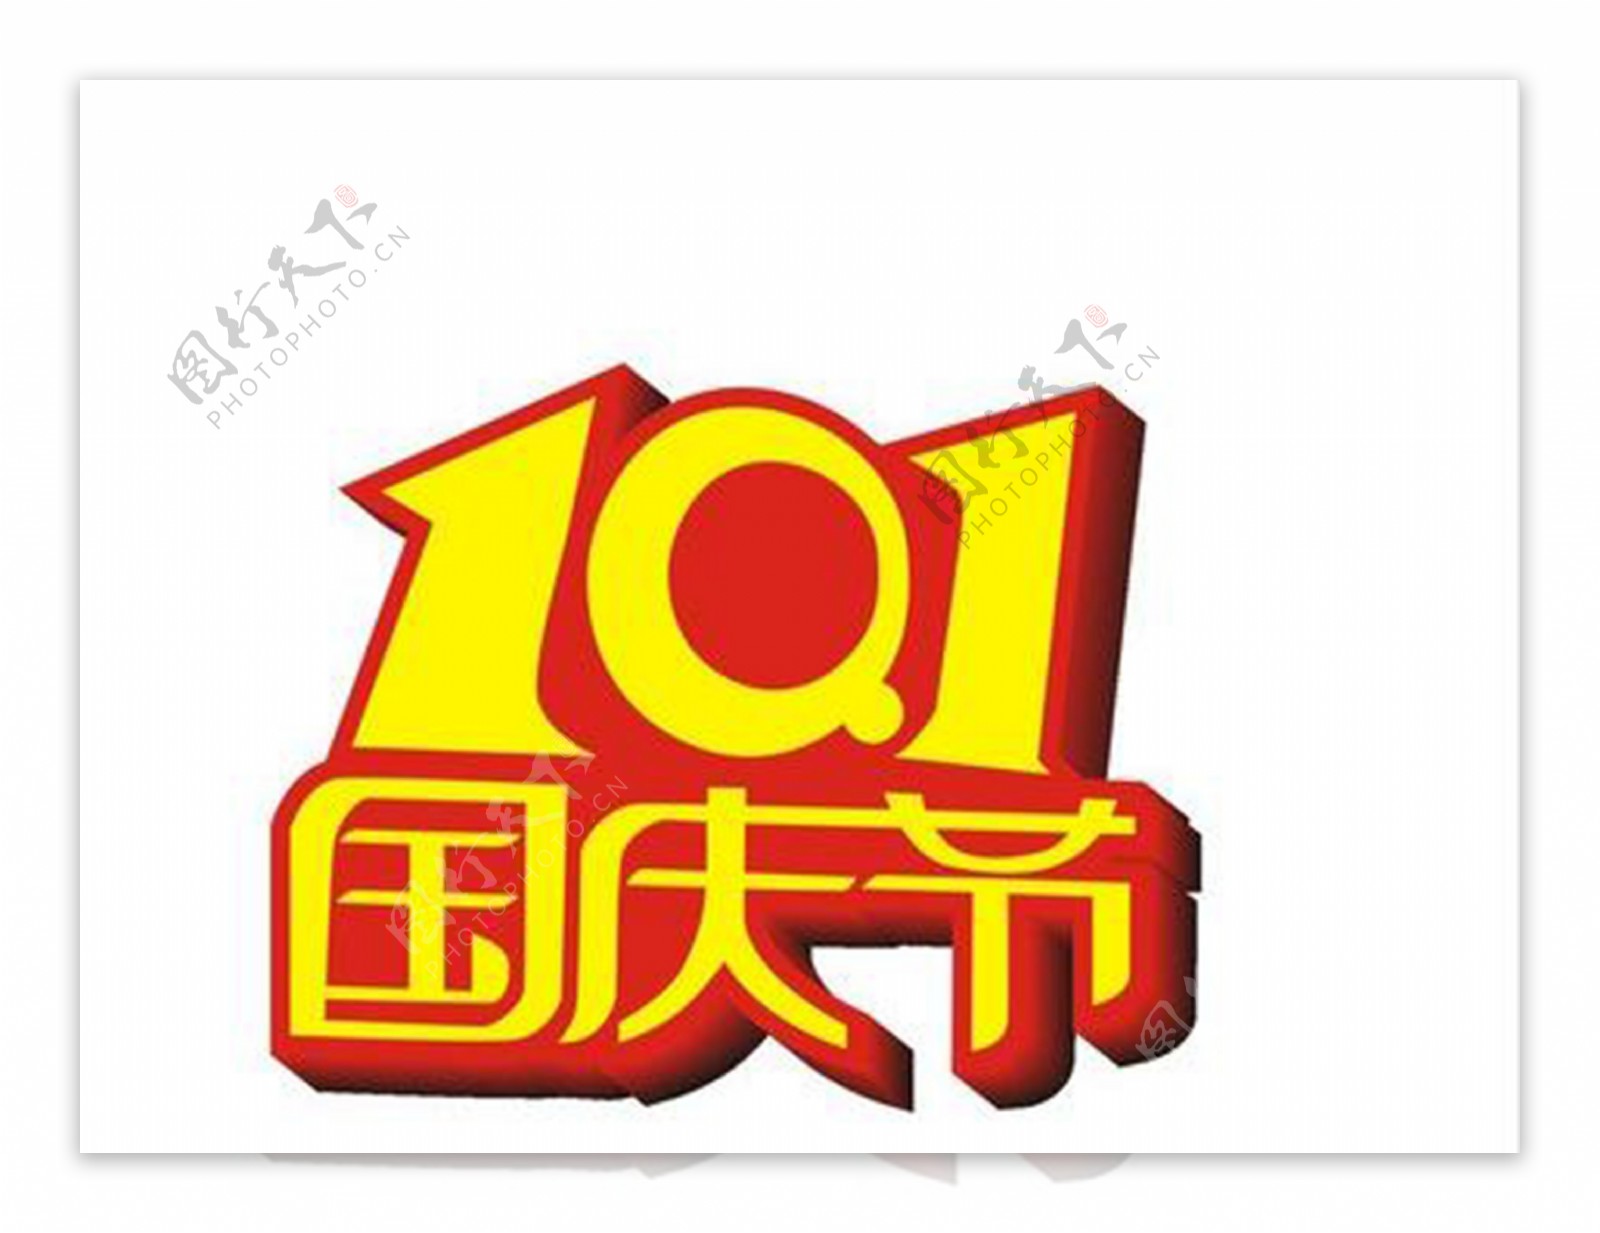 红黄色10.1国庆节字体元素